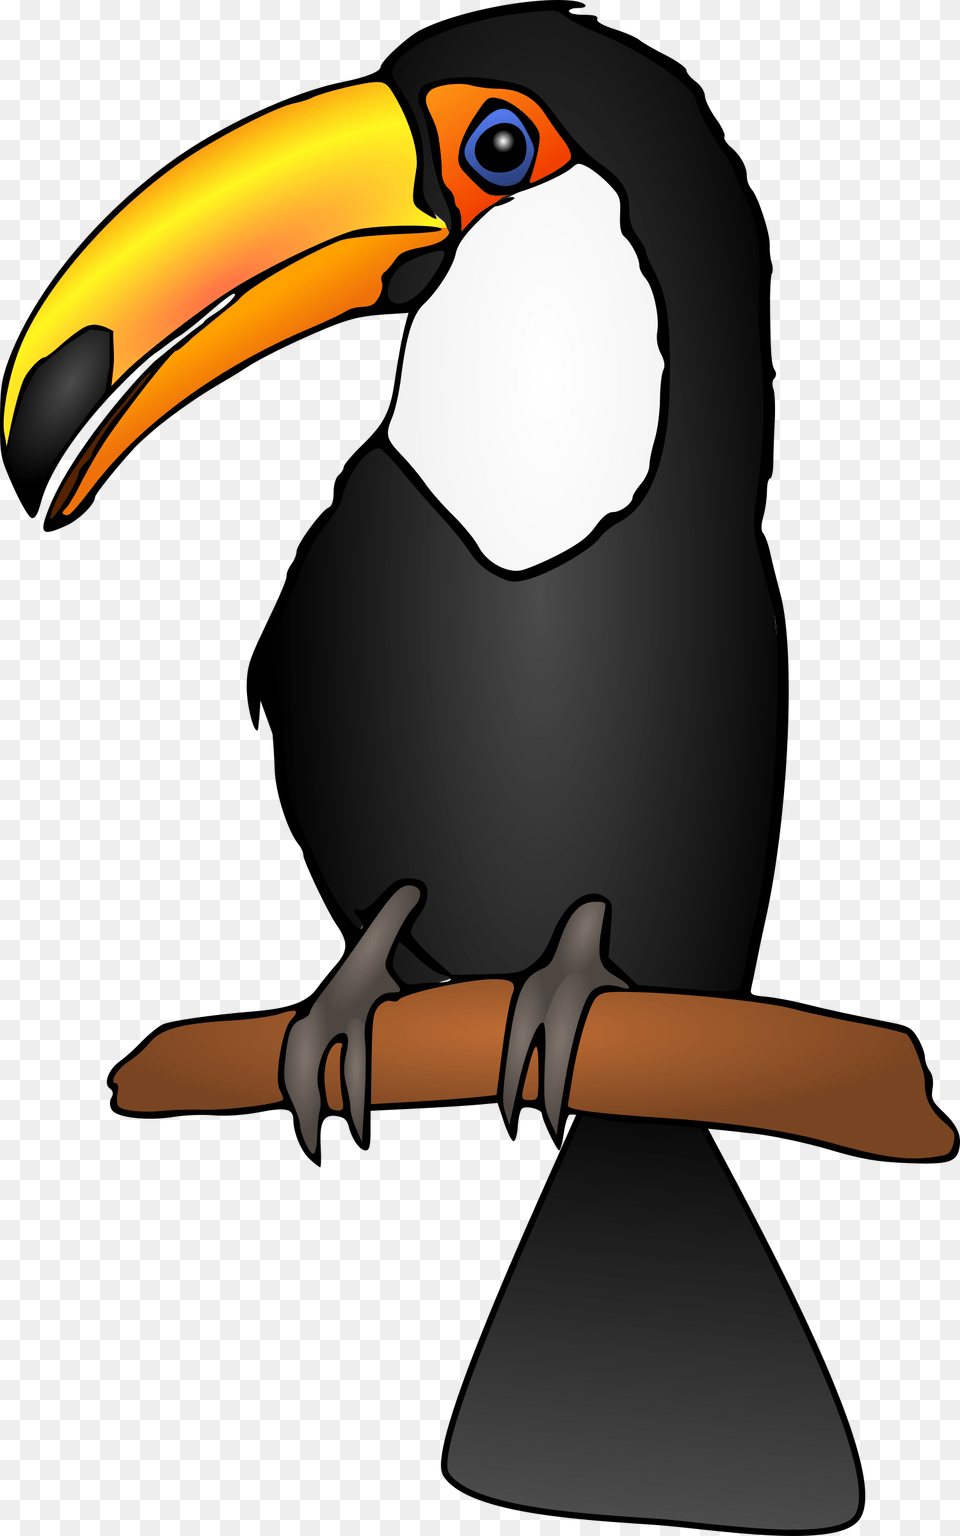 Clipart, Animal, Beak, Bird, Toucan Free Transparent Png